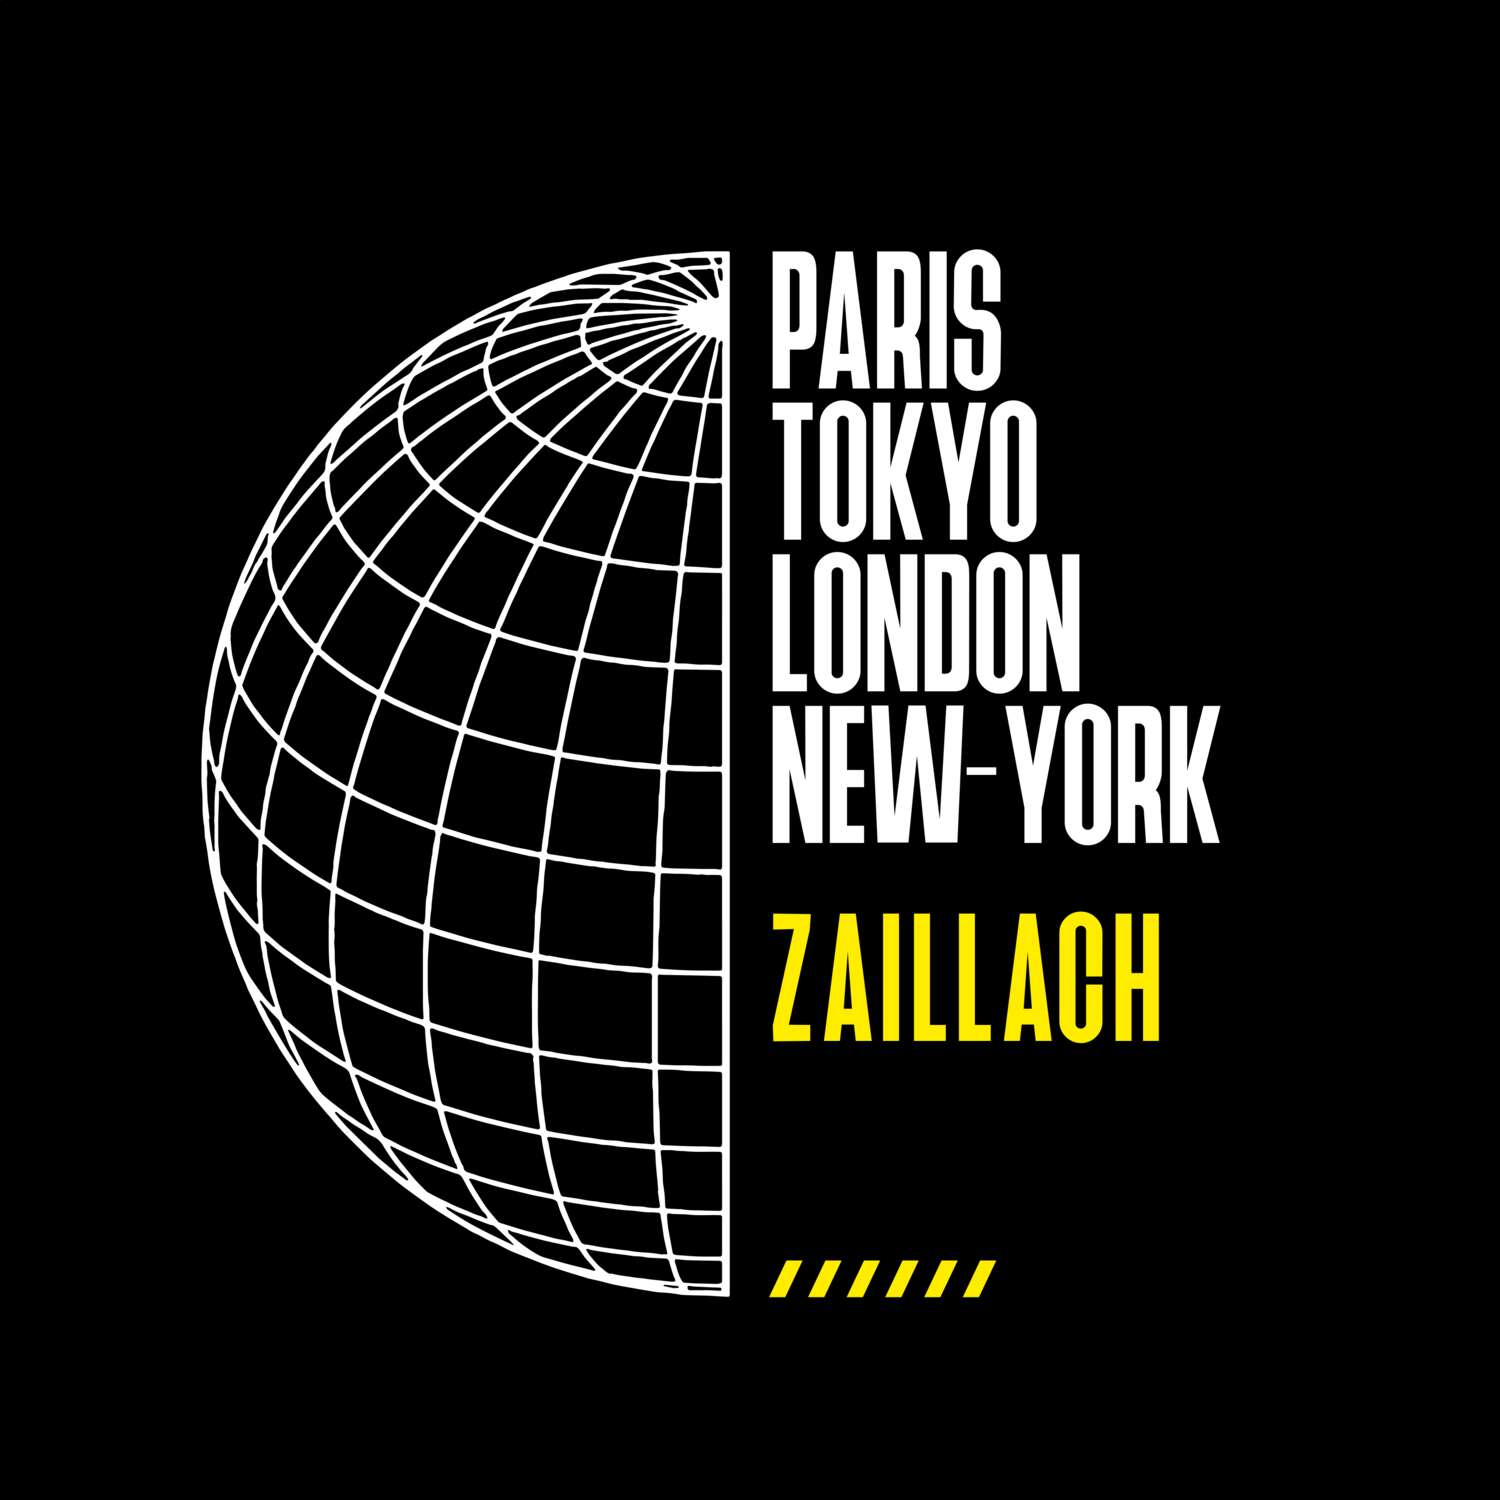 Zaillach T-Shirt »Paris Tokyo London«